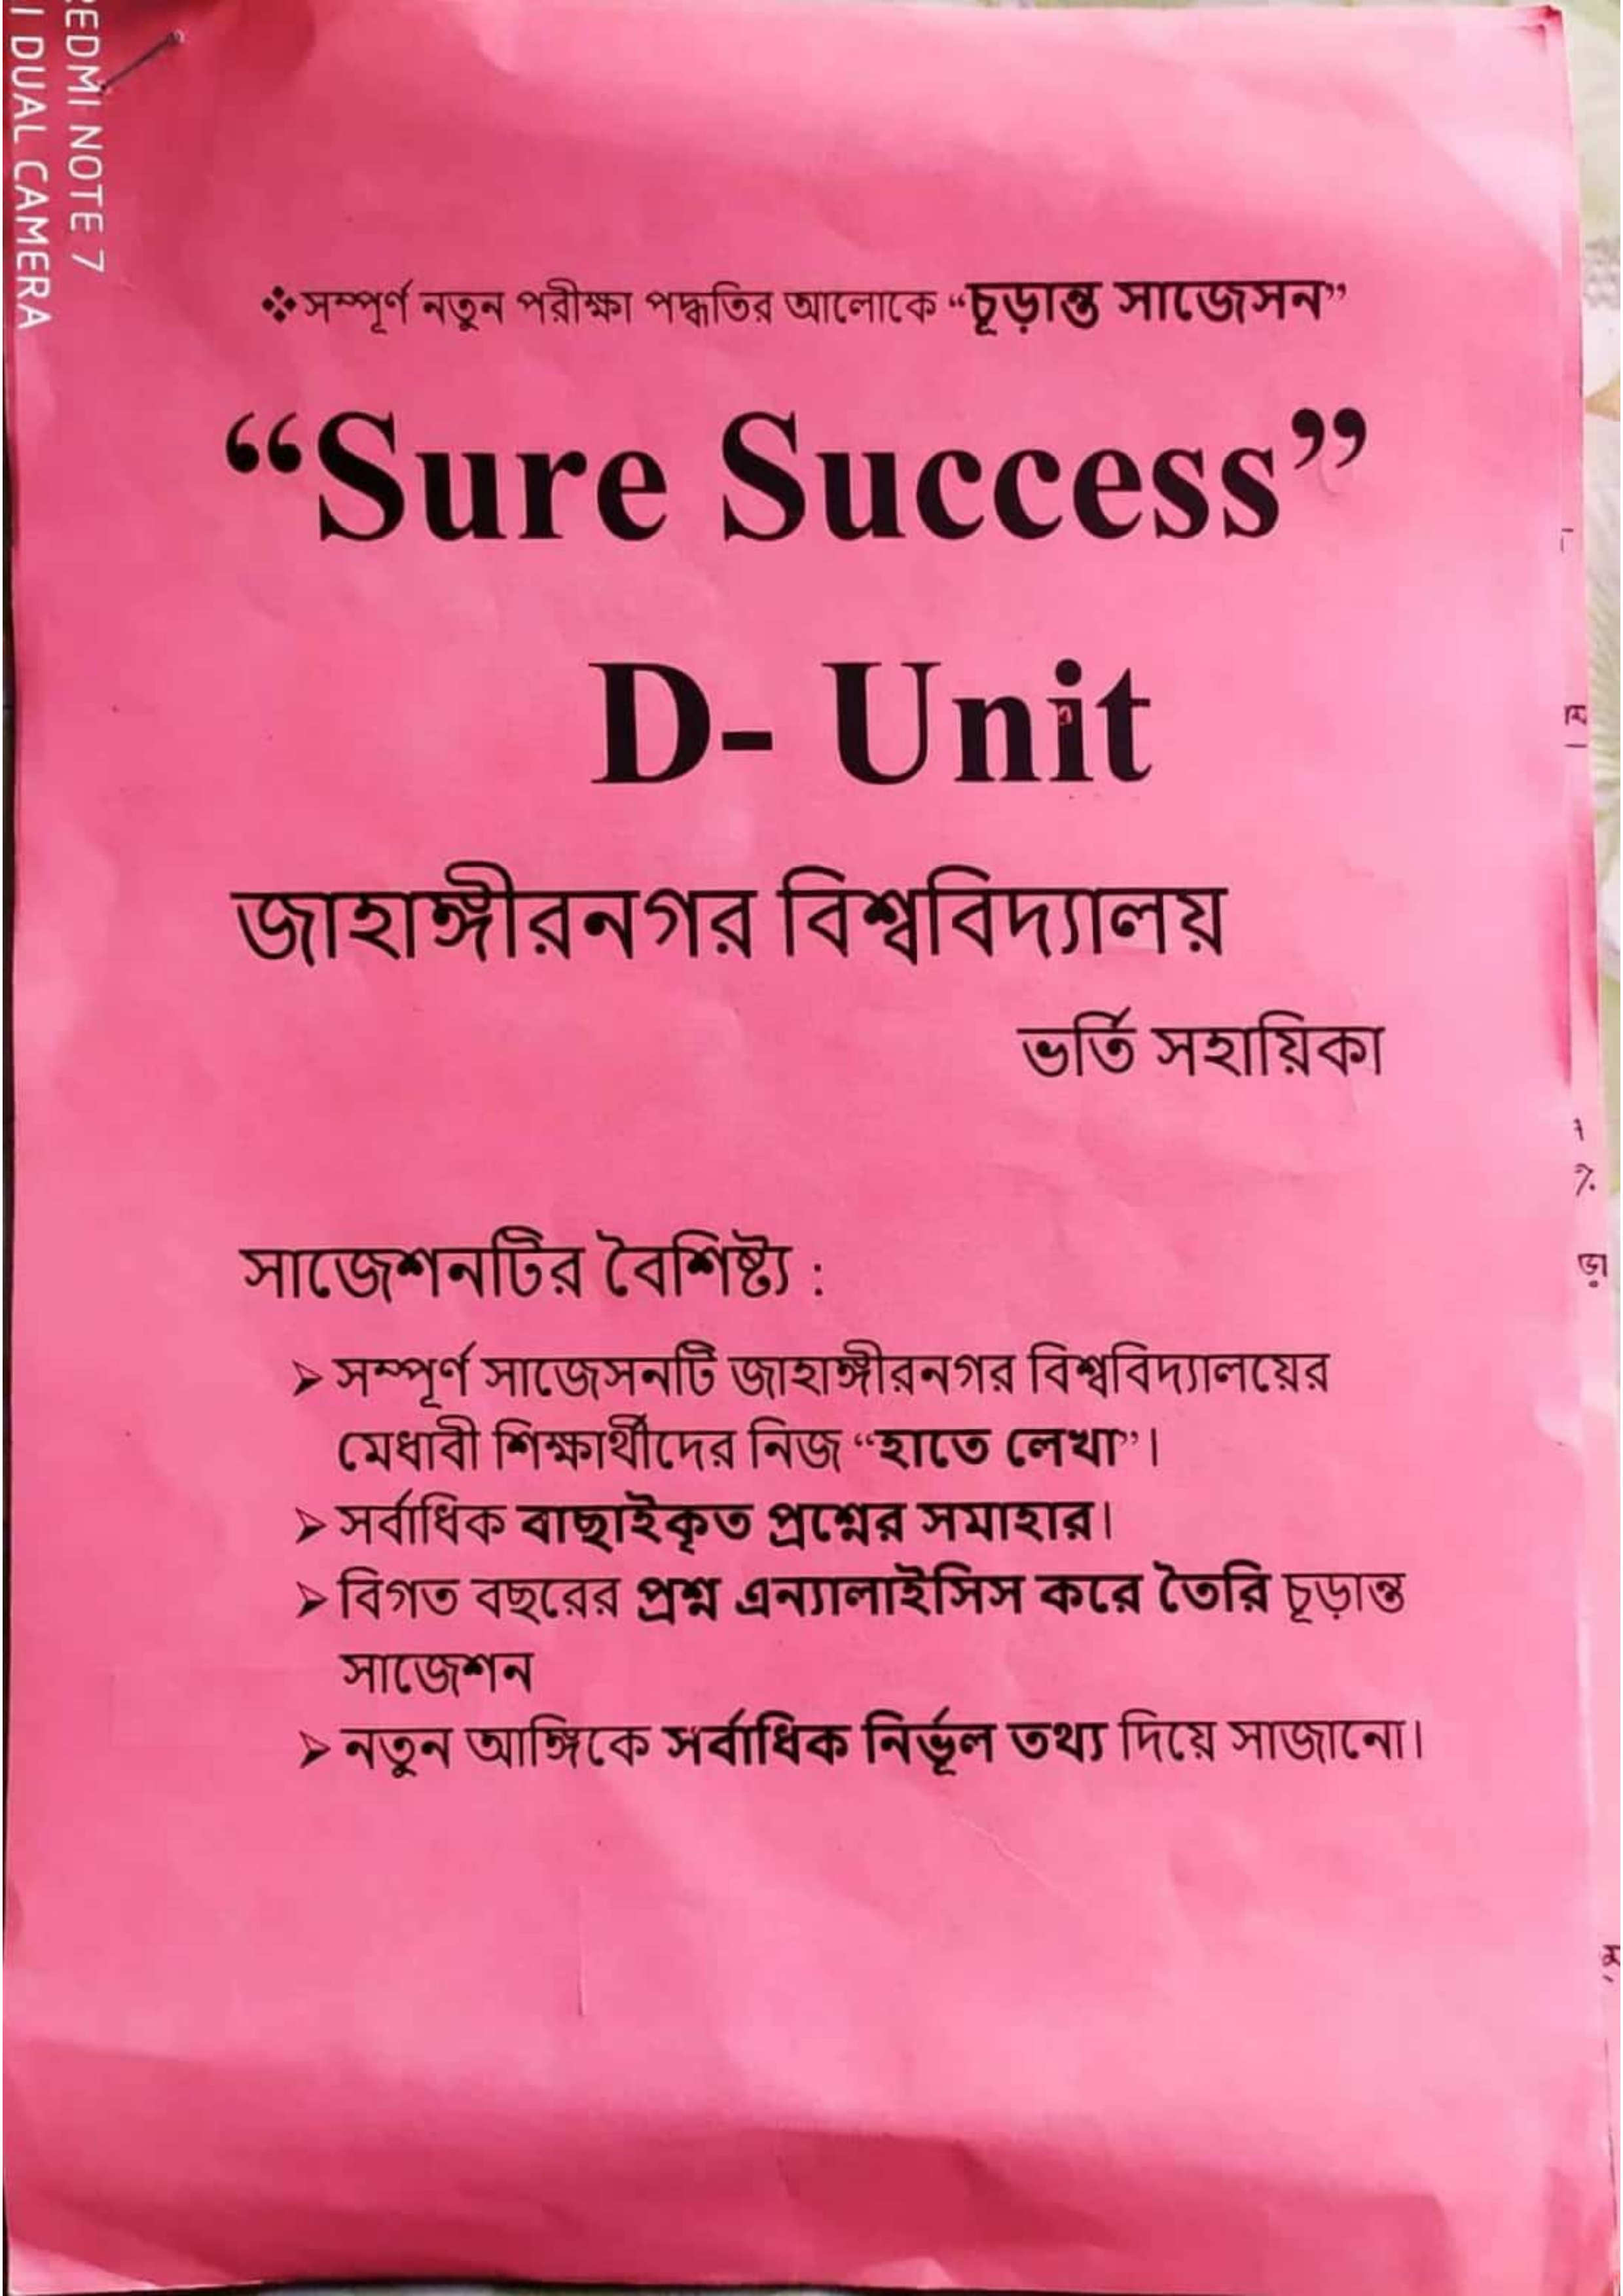 Sure Success JU D suggestion 2023 PDF